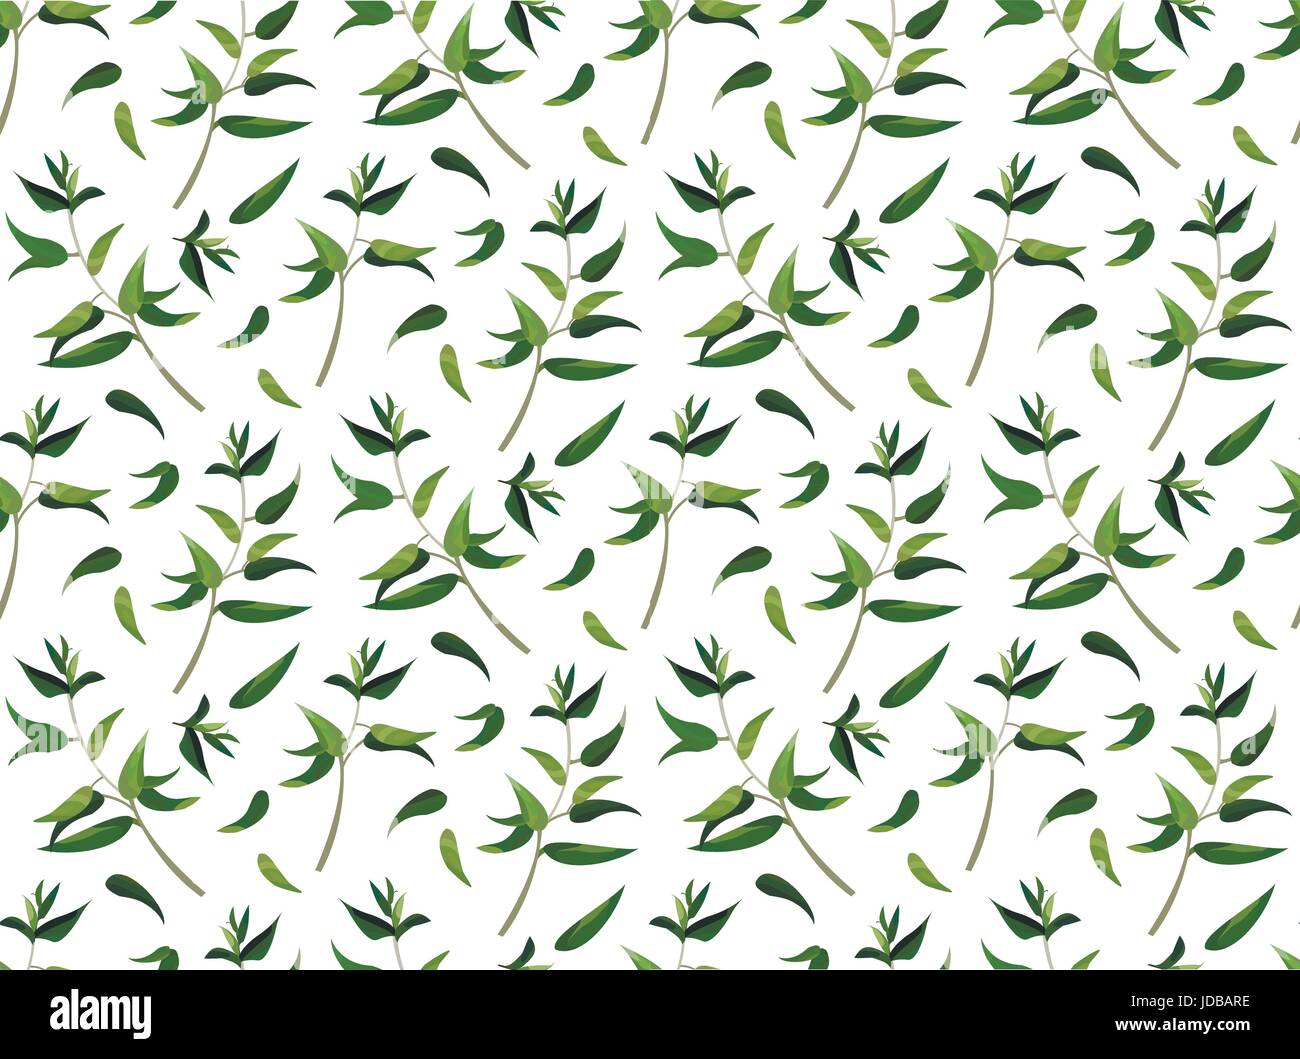 Nahtlose Muster von Hand gezeichnet Aquarell Stil Pflanzen Eukalyptus Zweige Grün Blätter Laub Zusammensetzung. Farbe Vektor Illustration Natur staatlich Stock Vektor